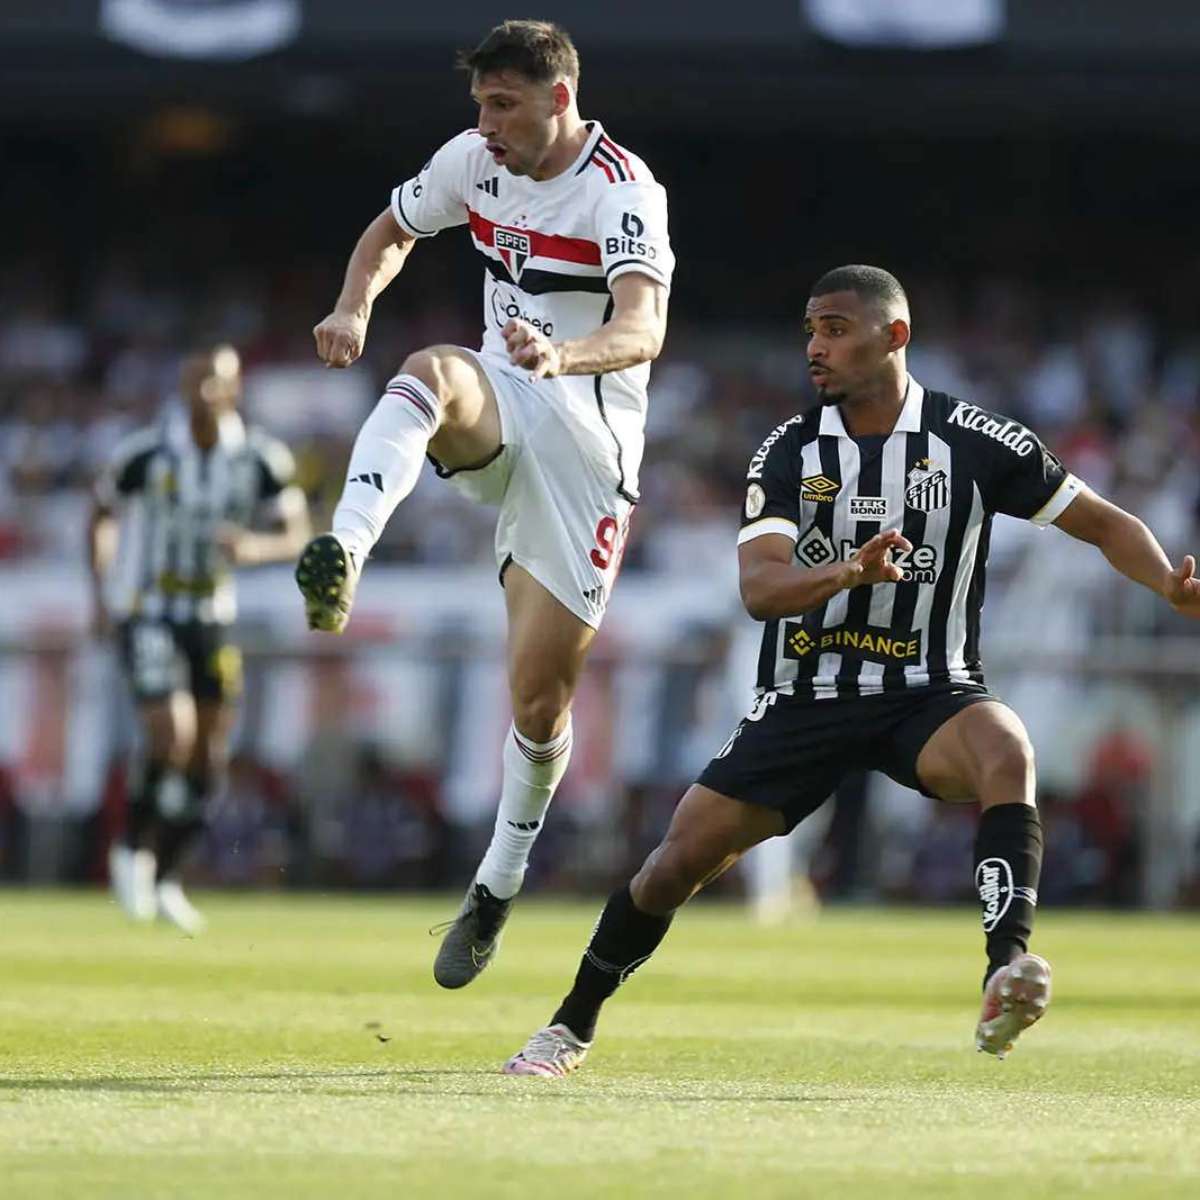 Corinthians faz último jogo em casa na temporada; confira o retrospecto -  Gazeta Esportiva